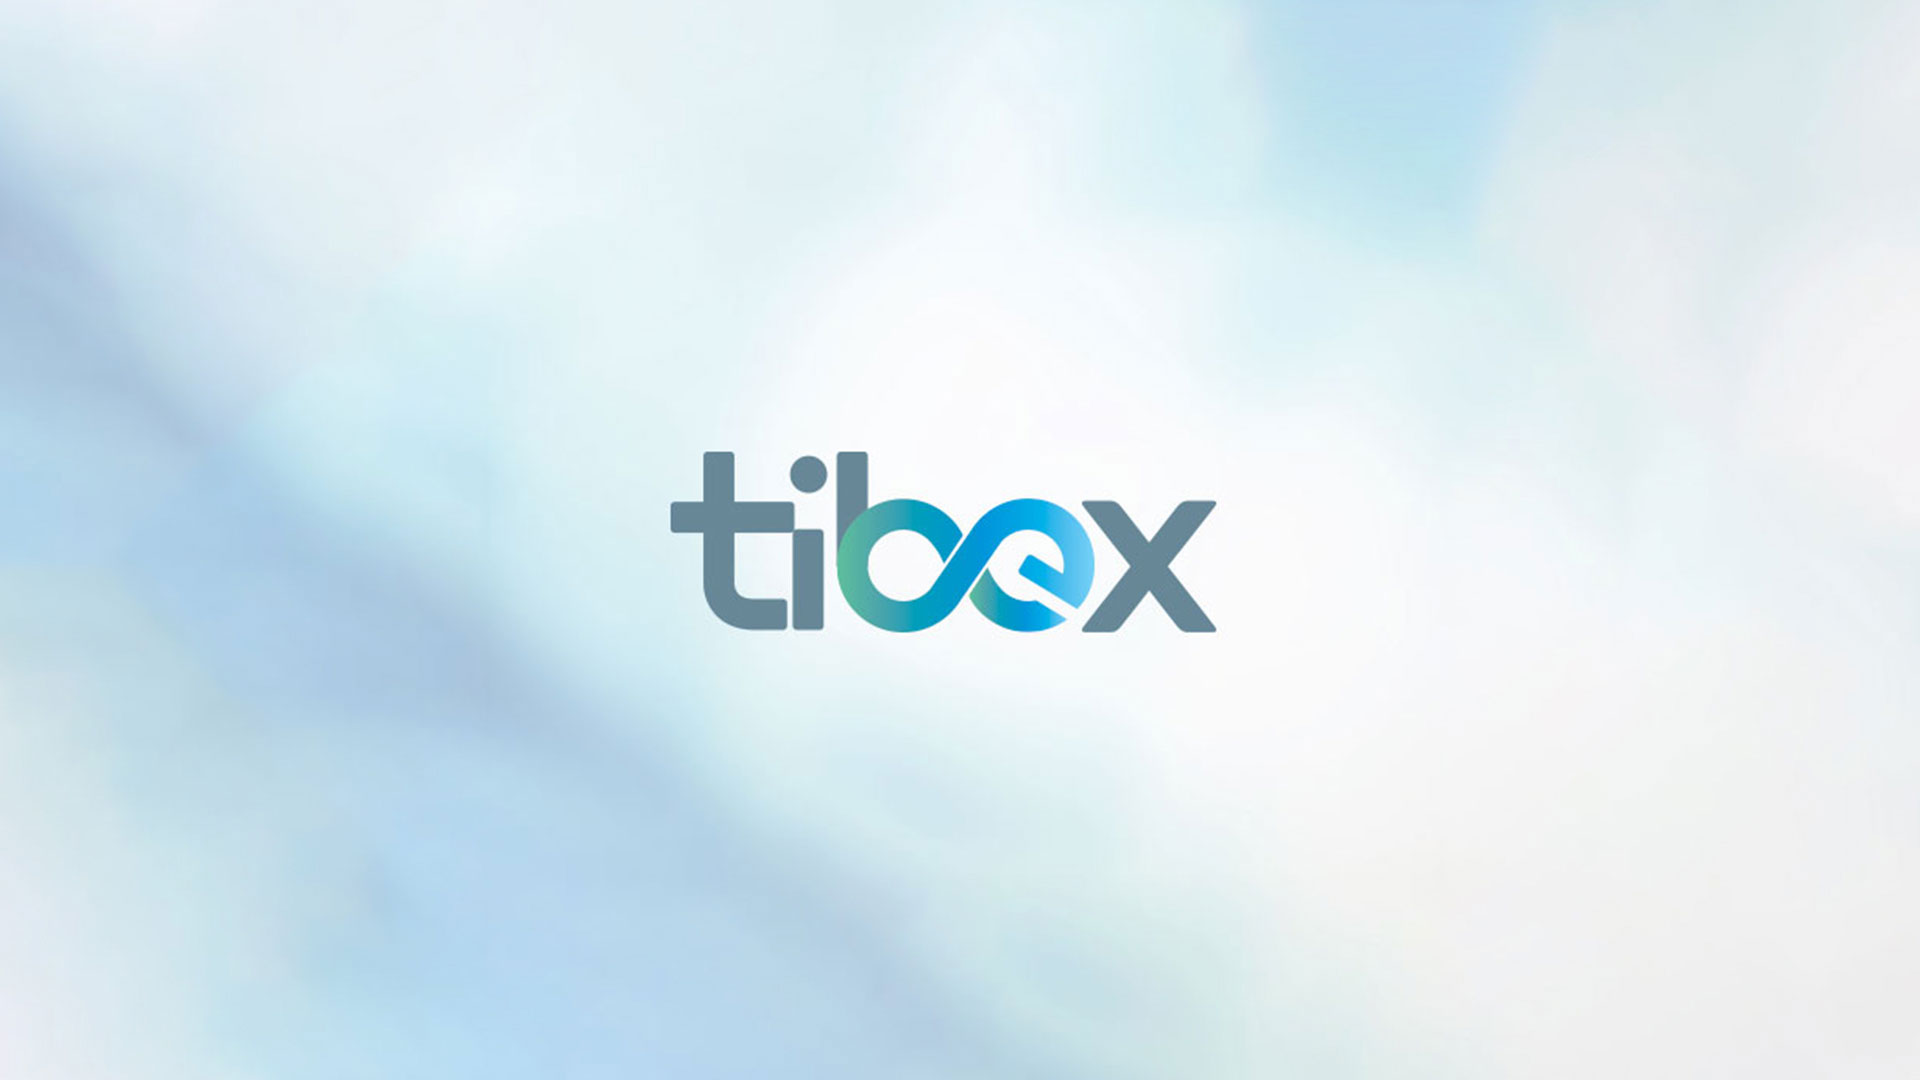 Tibex